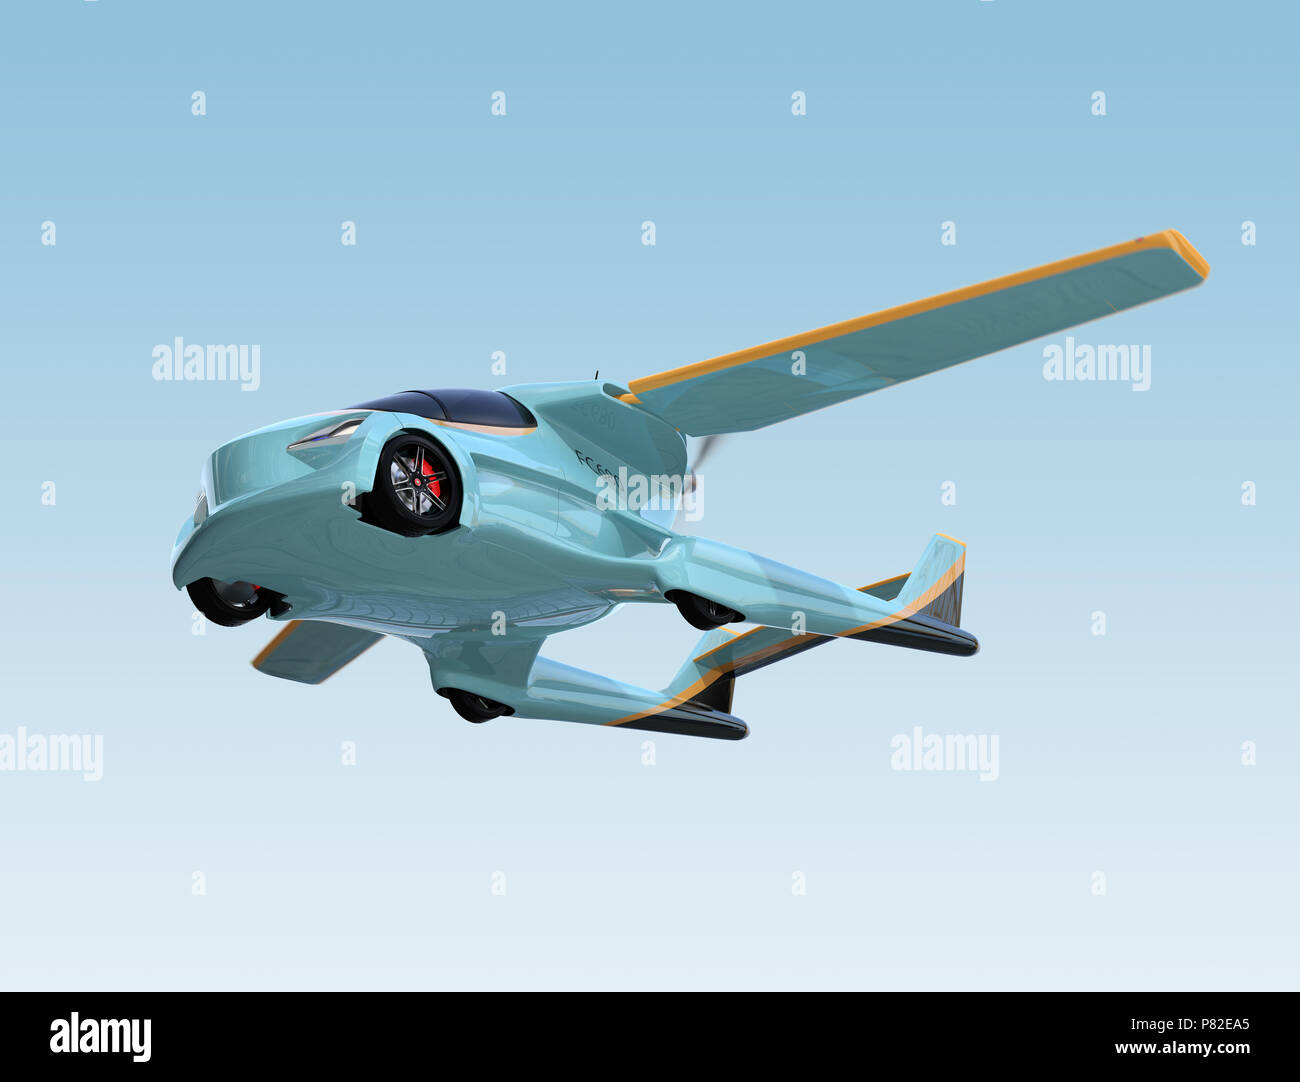 Macchina volante immagini e fotografie stock ad alta risoluzione - Alamy